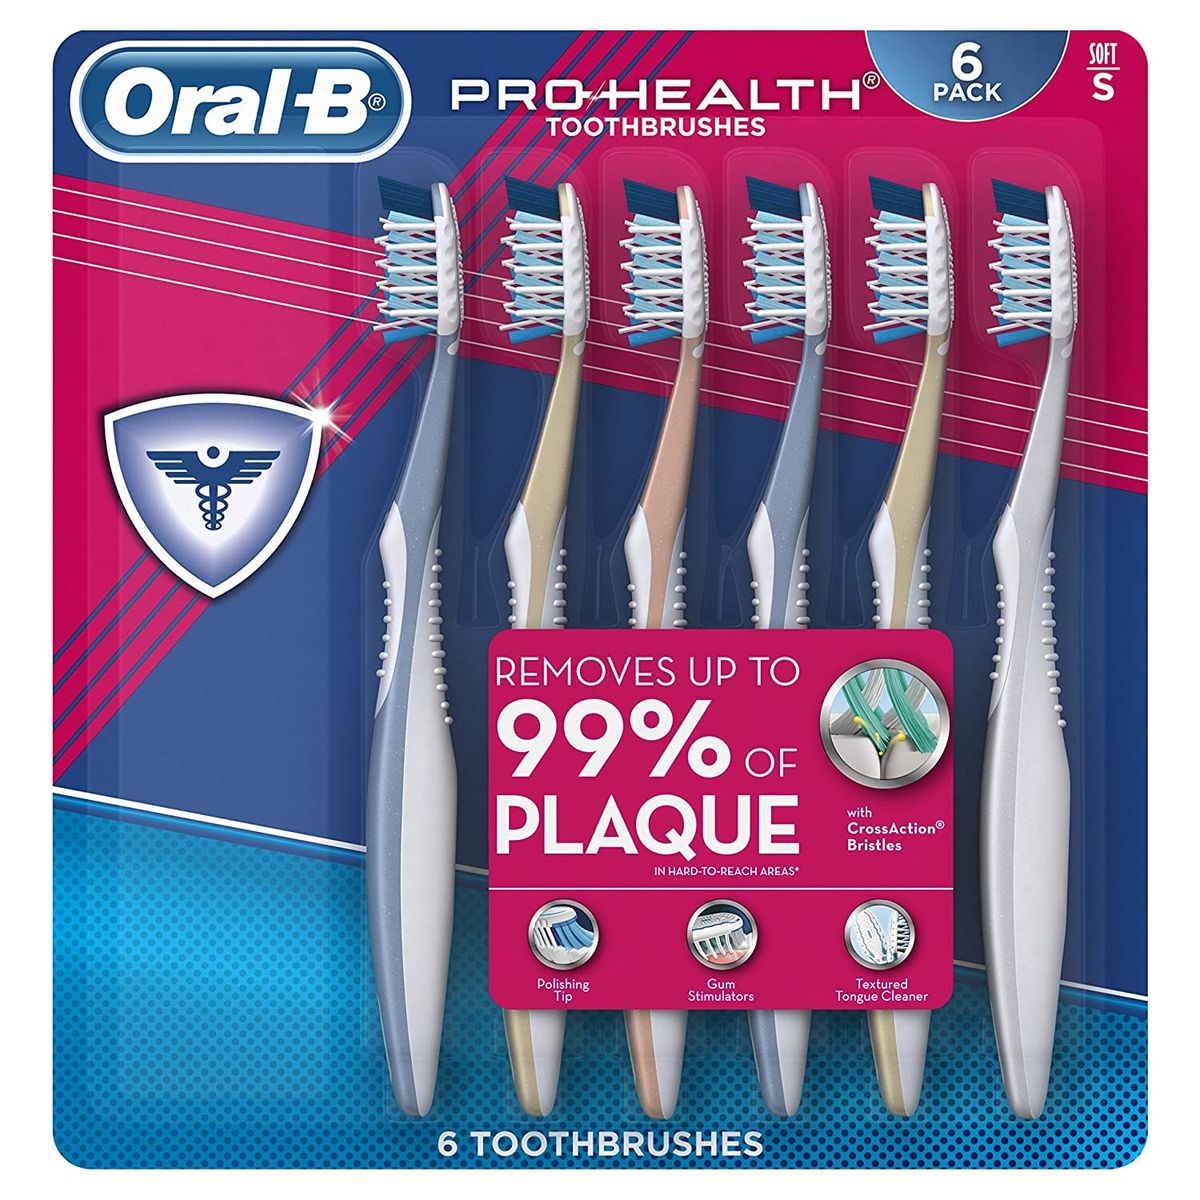 Οι 6 καλύτερες χειροκίνητες οδοντόβουρτσες για βαθύ καθαρισμό